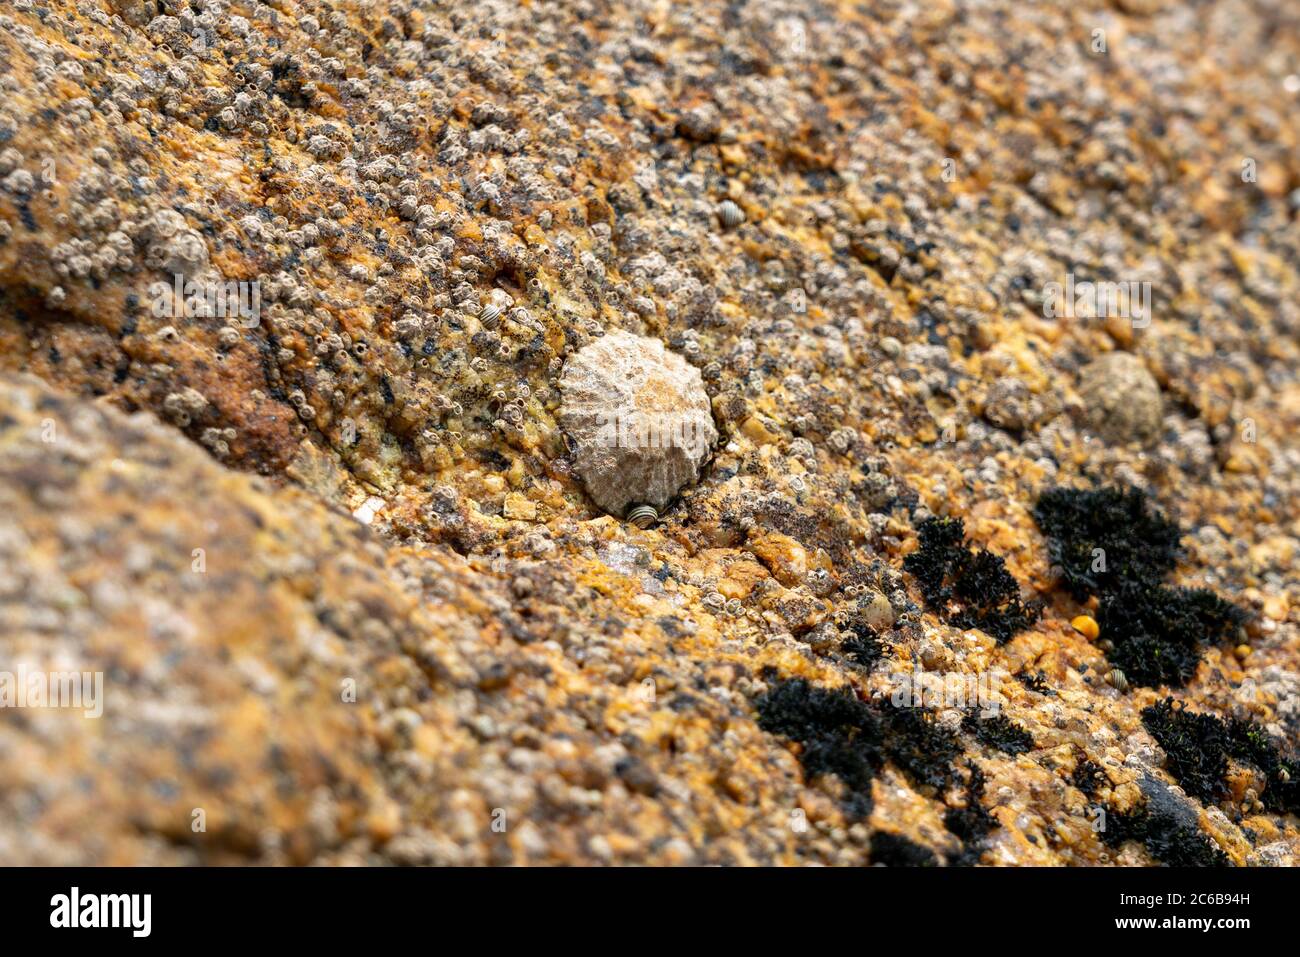 Primer plano de una mascota (patella vulgata) en una superficie rocosa cerca del mar Foto de stock